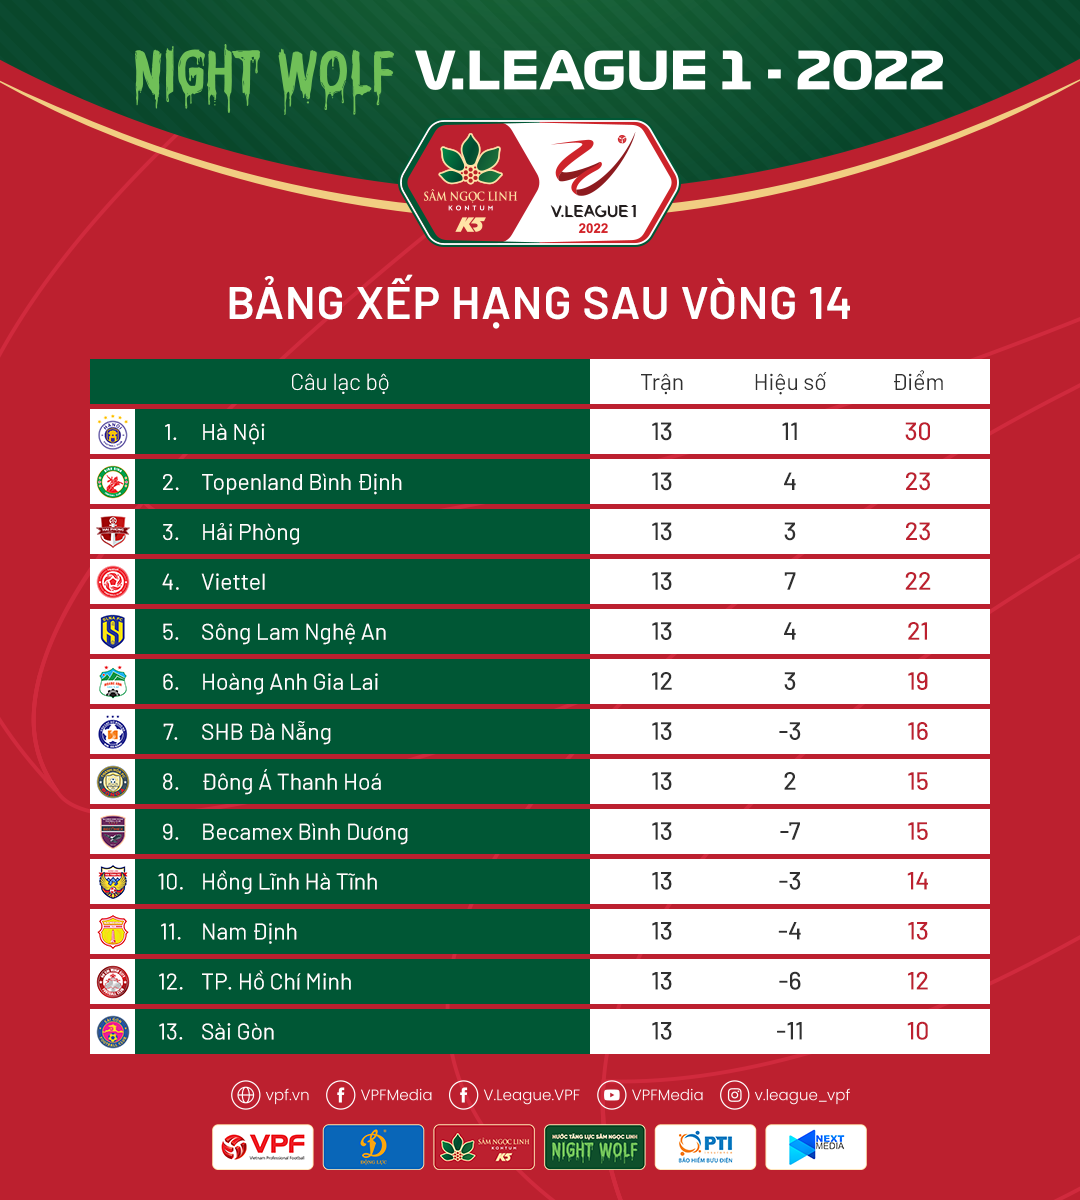 CLB Sài Gòn FC liên tục gặp 'biến cố', HAGL sẽ được hưởng lợi tại vòng 15 V-League?